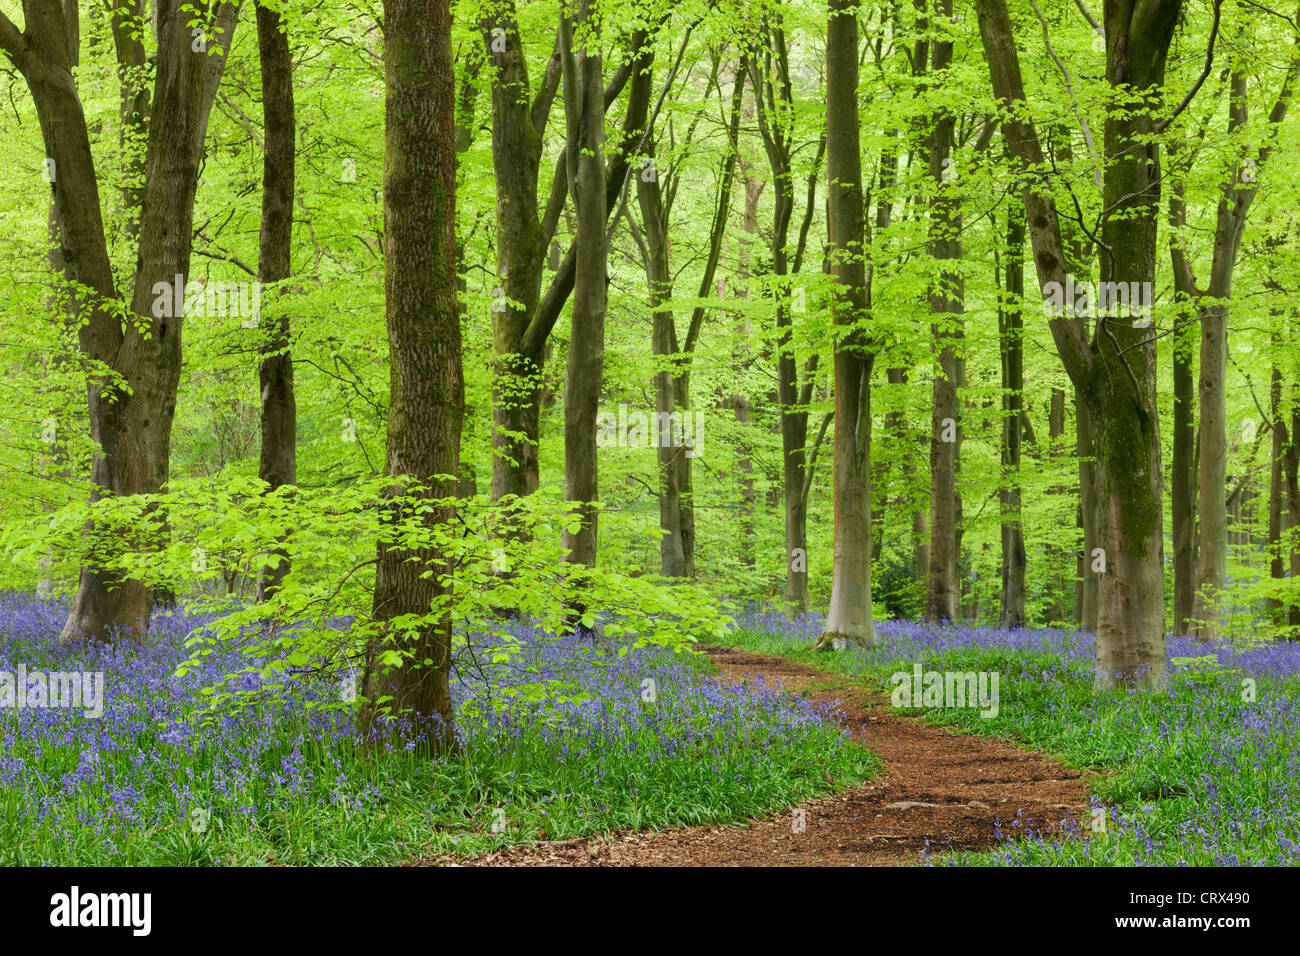 Tapis de jacinthes des bois de hêtre, dans un bois de l'Ouest, Wiltshire, Angleterre. Printemps (mai) 2012. Banque D'Images